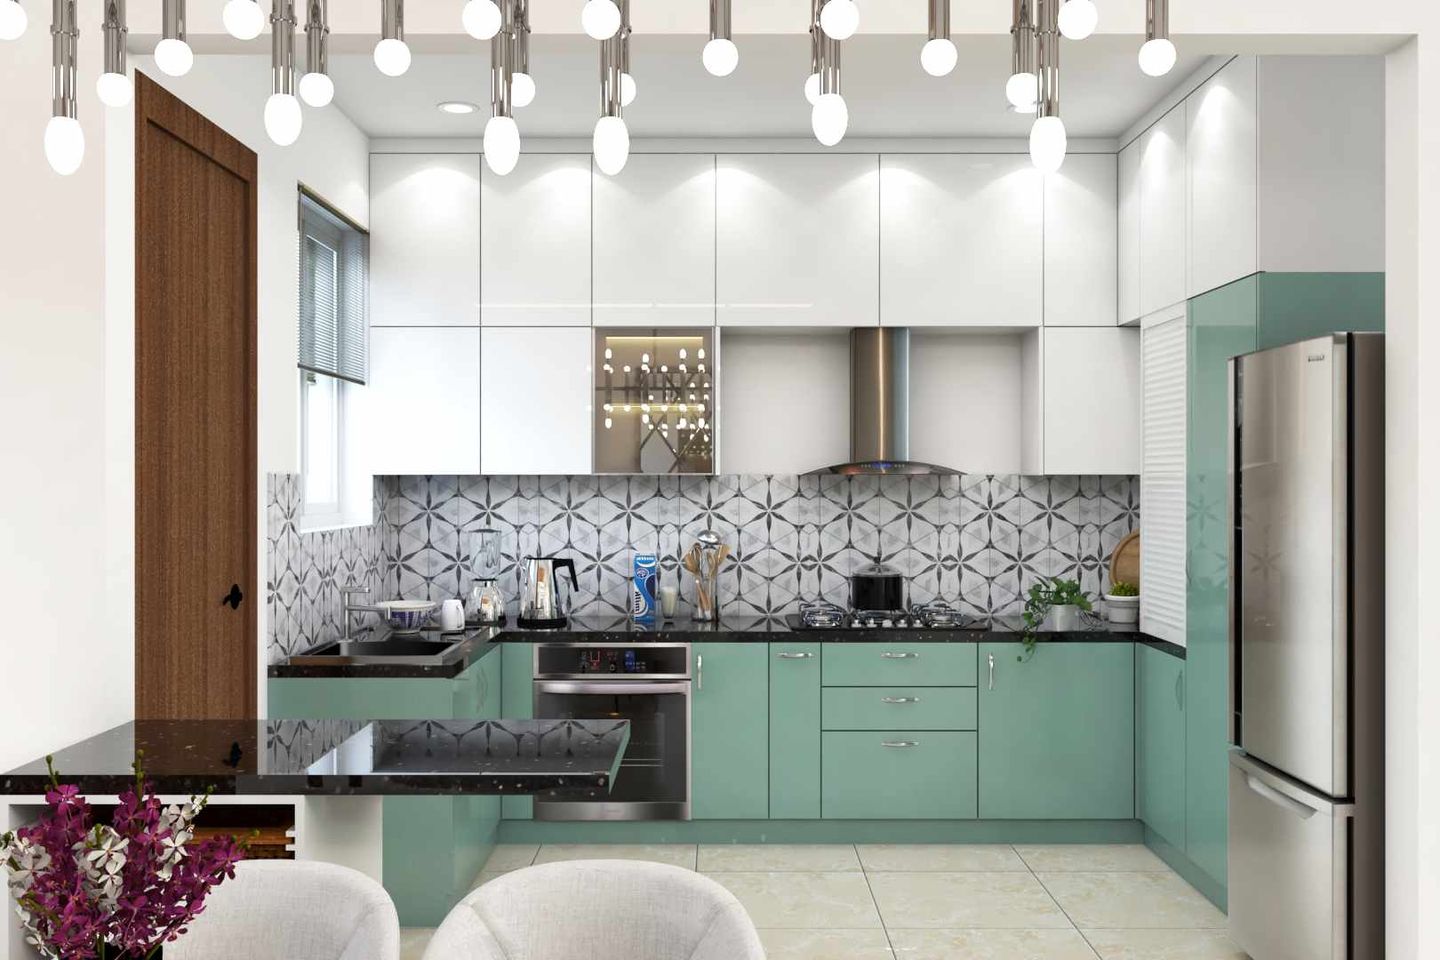 U-Shaped Kitchen Design With Patterned Dado Tiles - Livspace